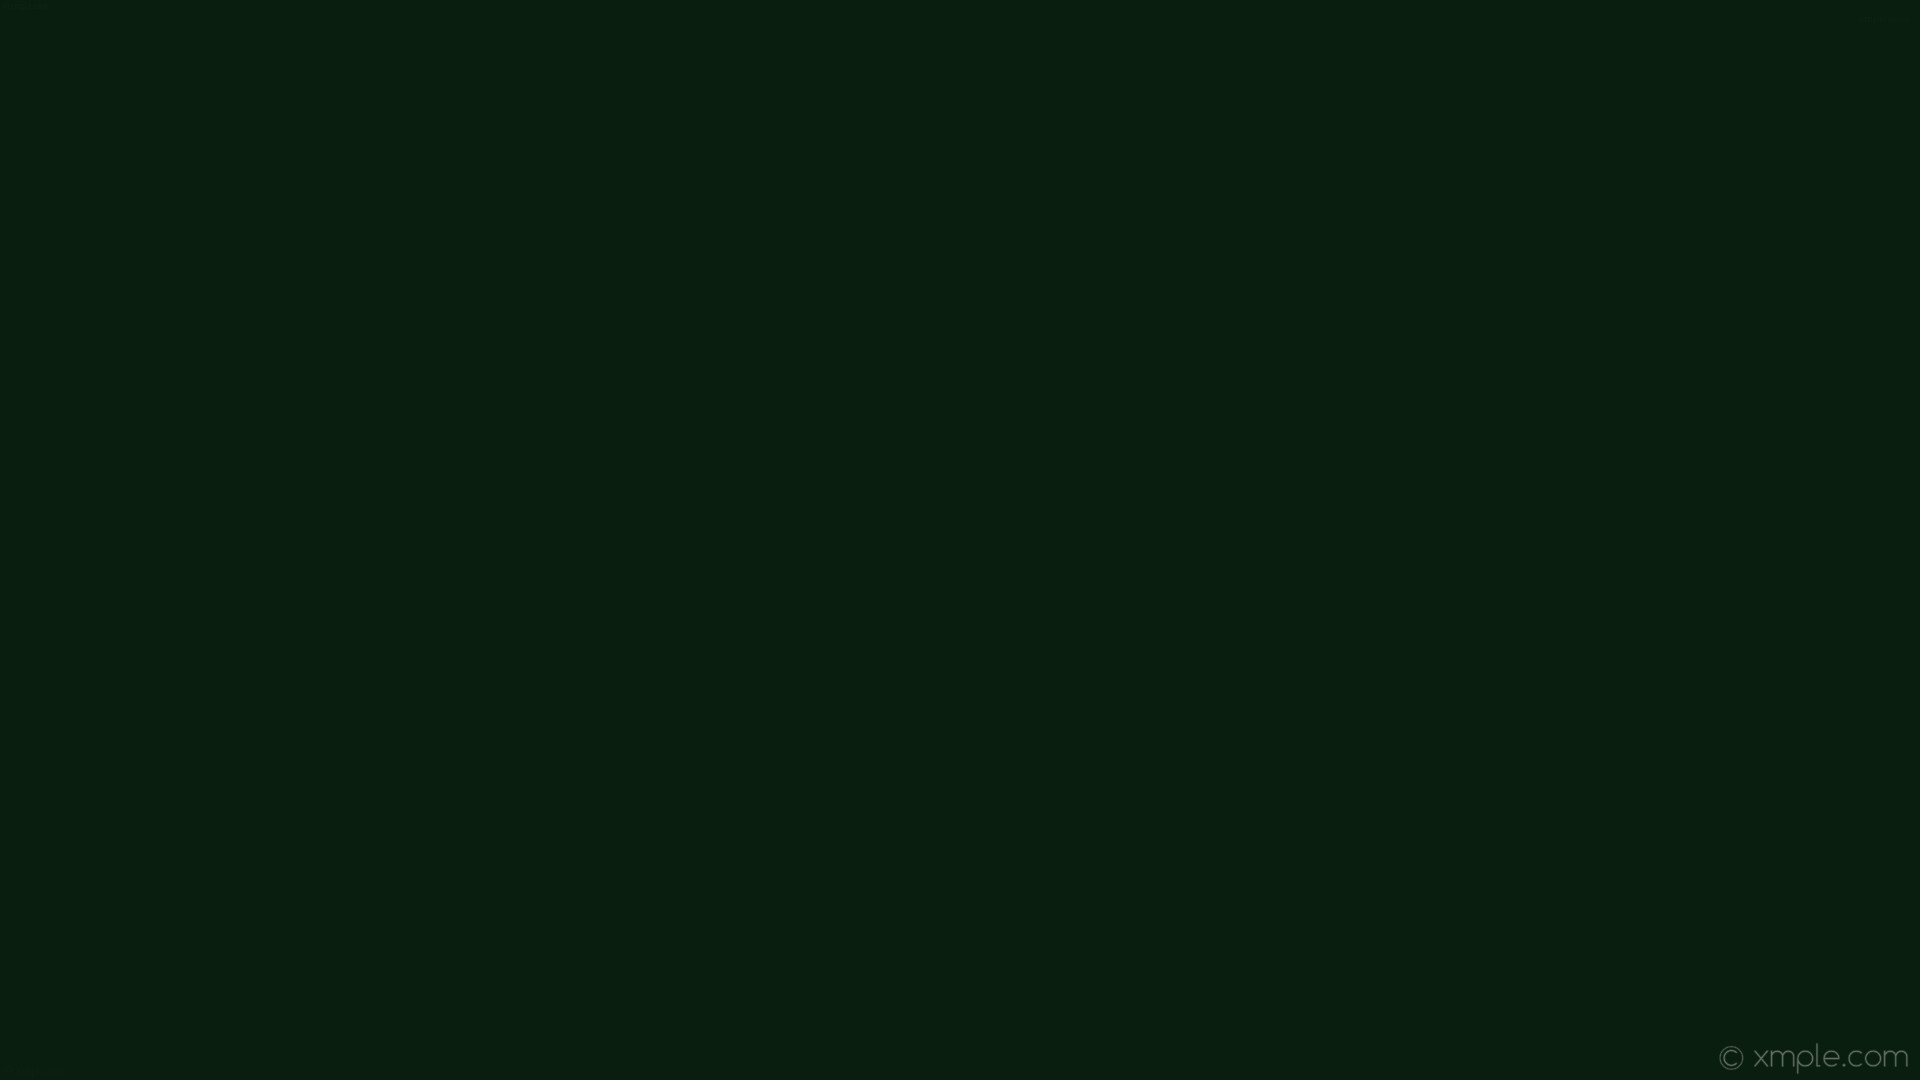 1920x1080 wallpaper solid color plain green one colour single dark green #091e0e